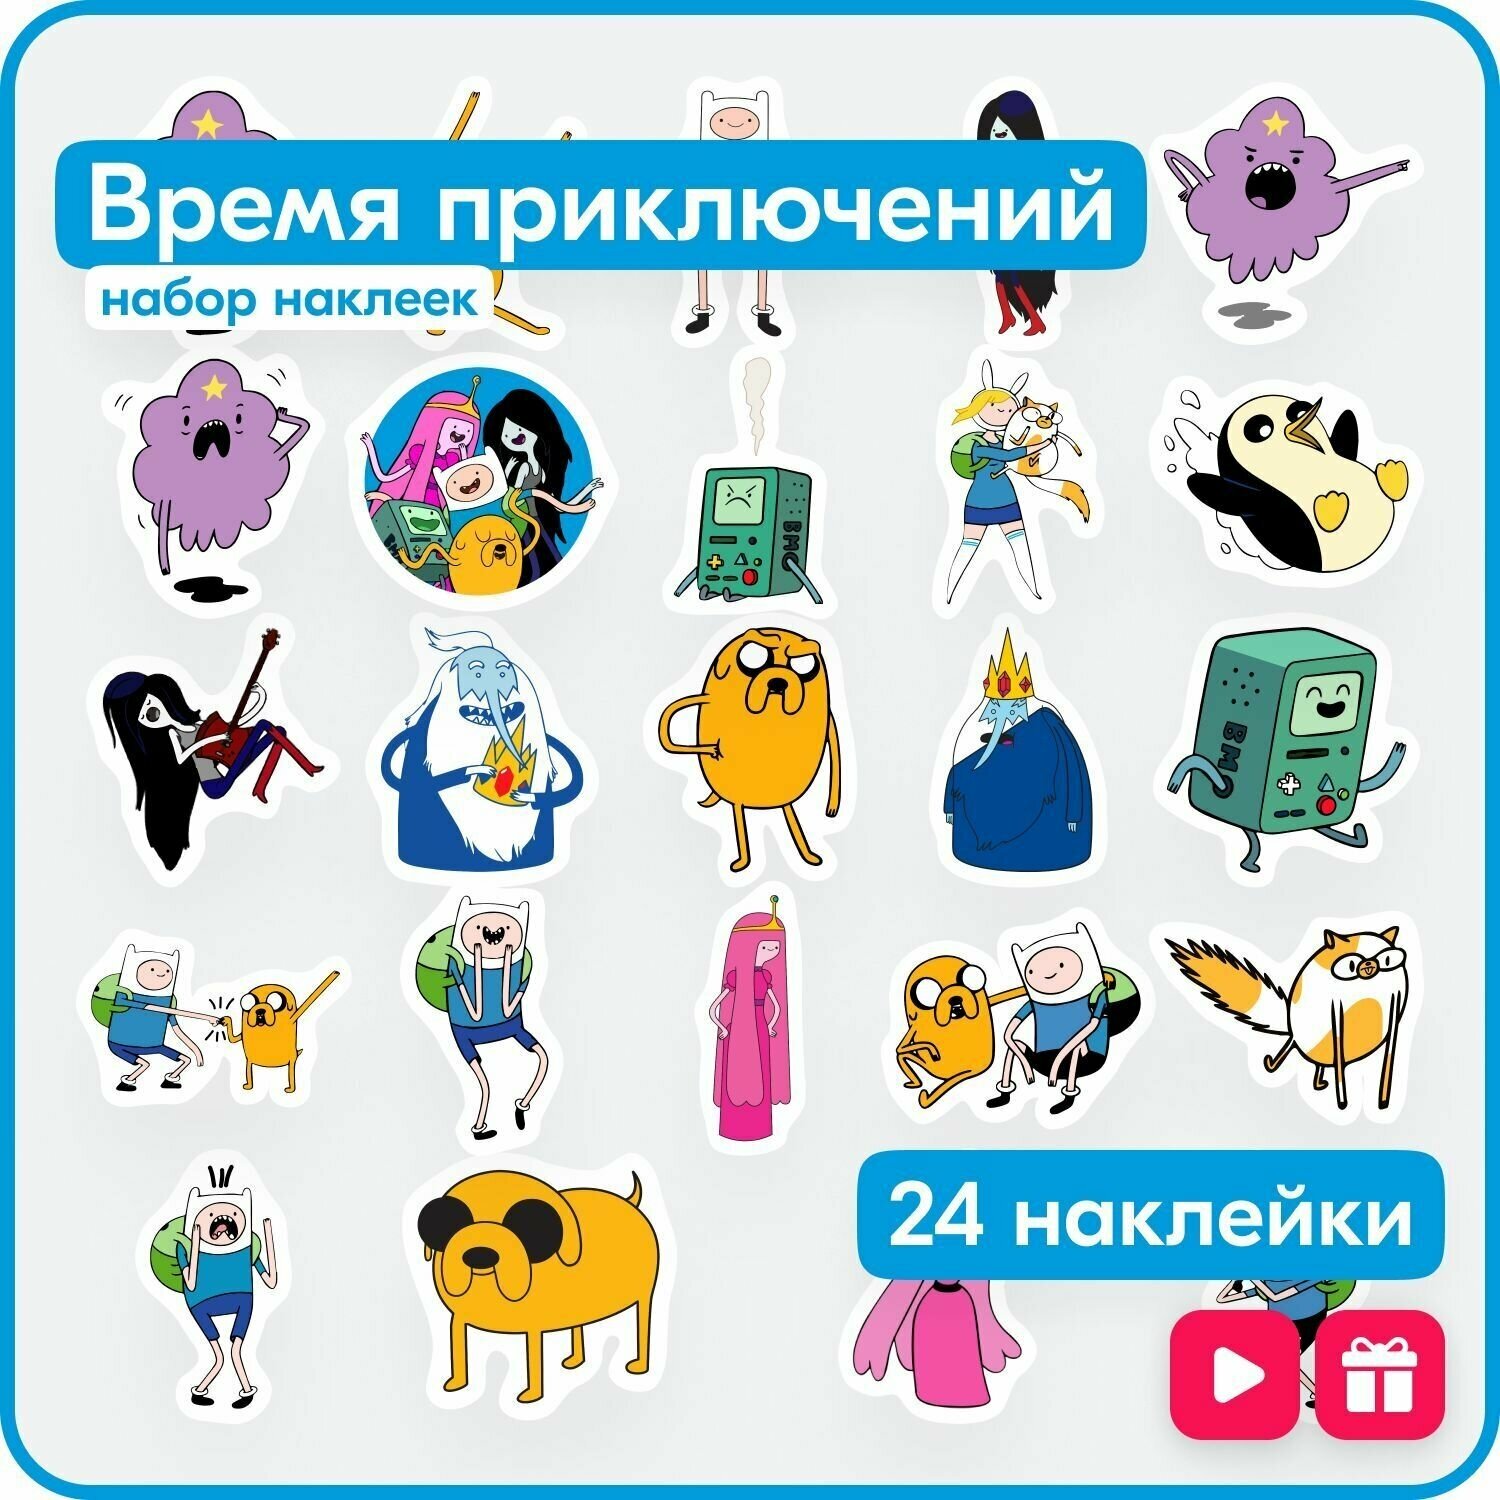 Наклейки - мультфильм Время приключений (Adventure Time)